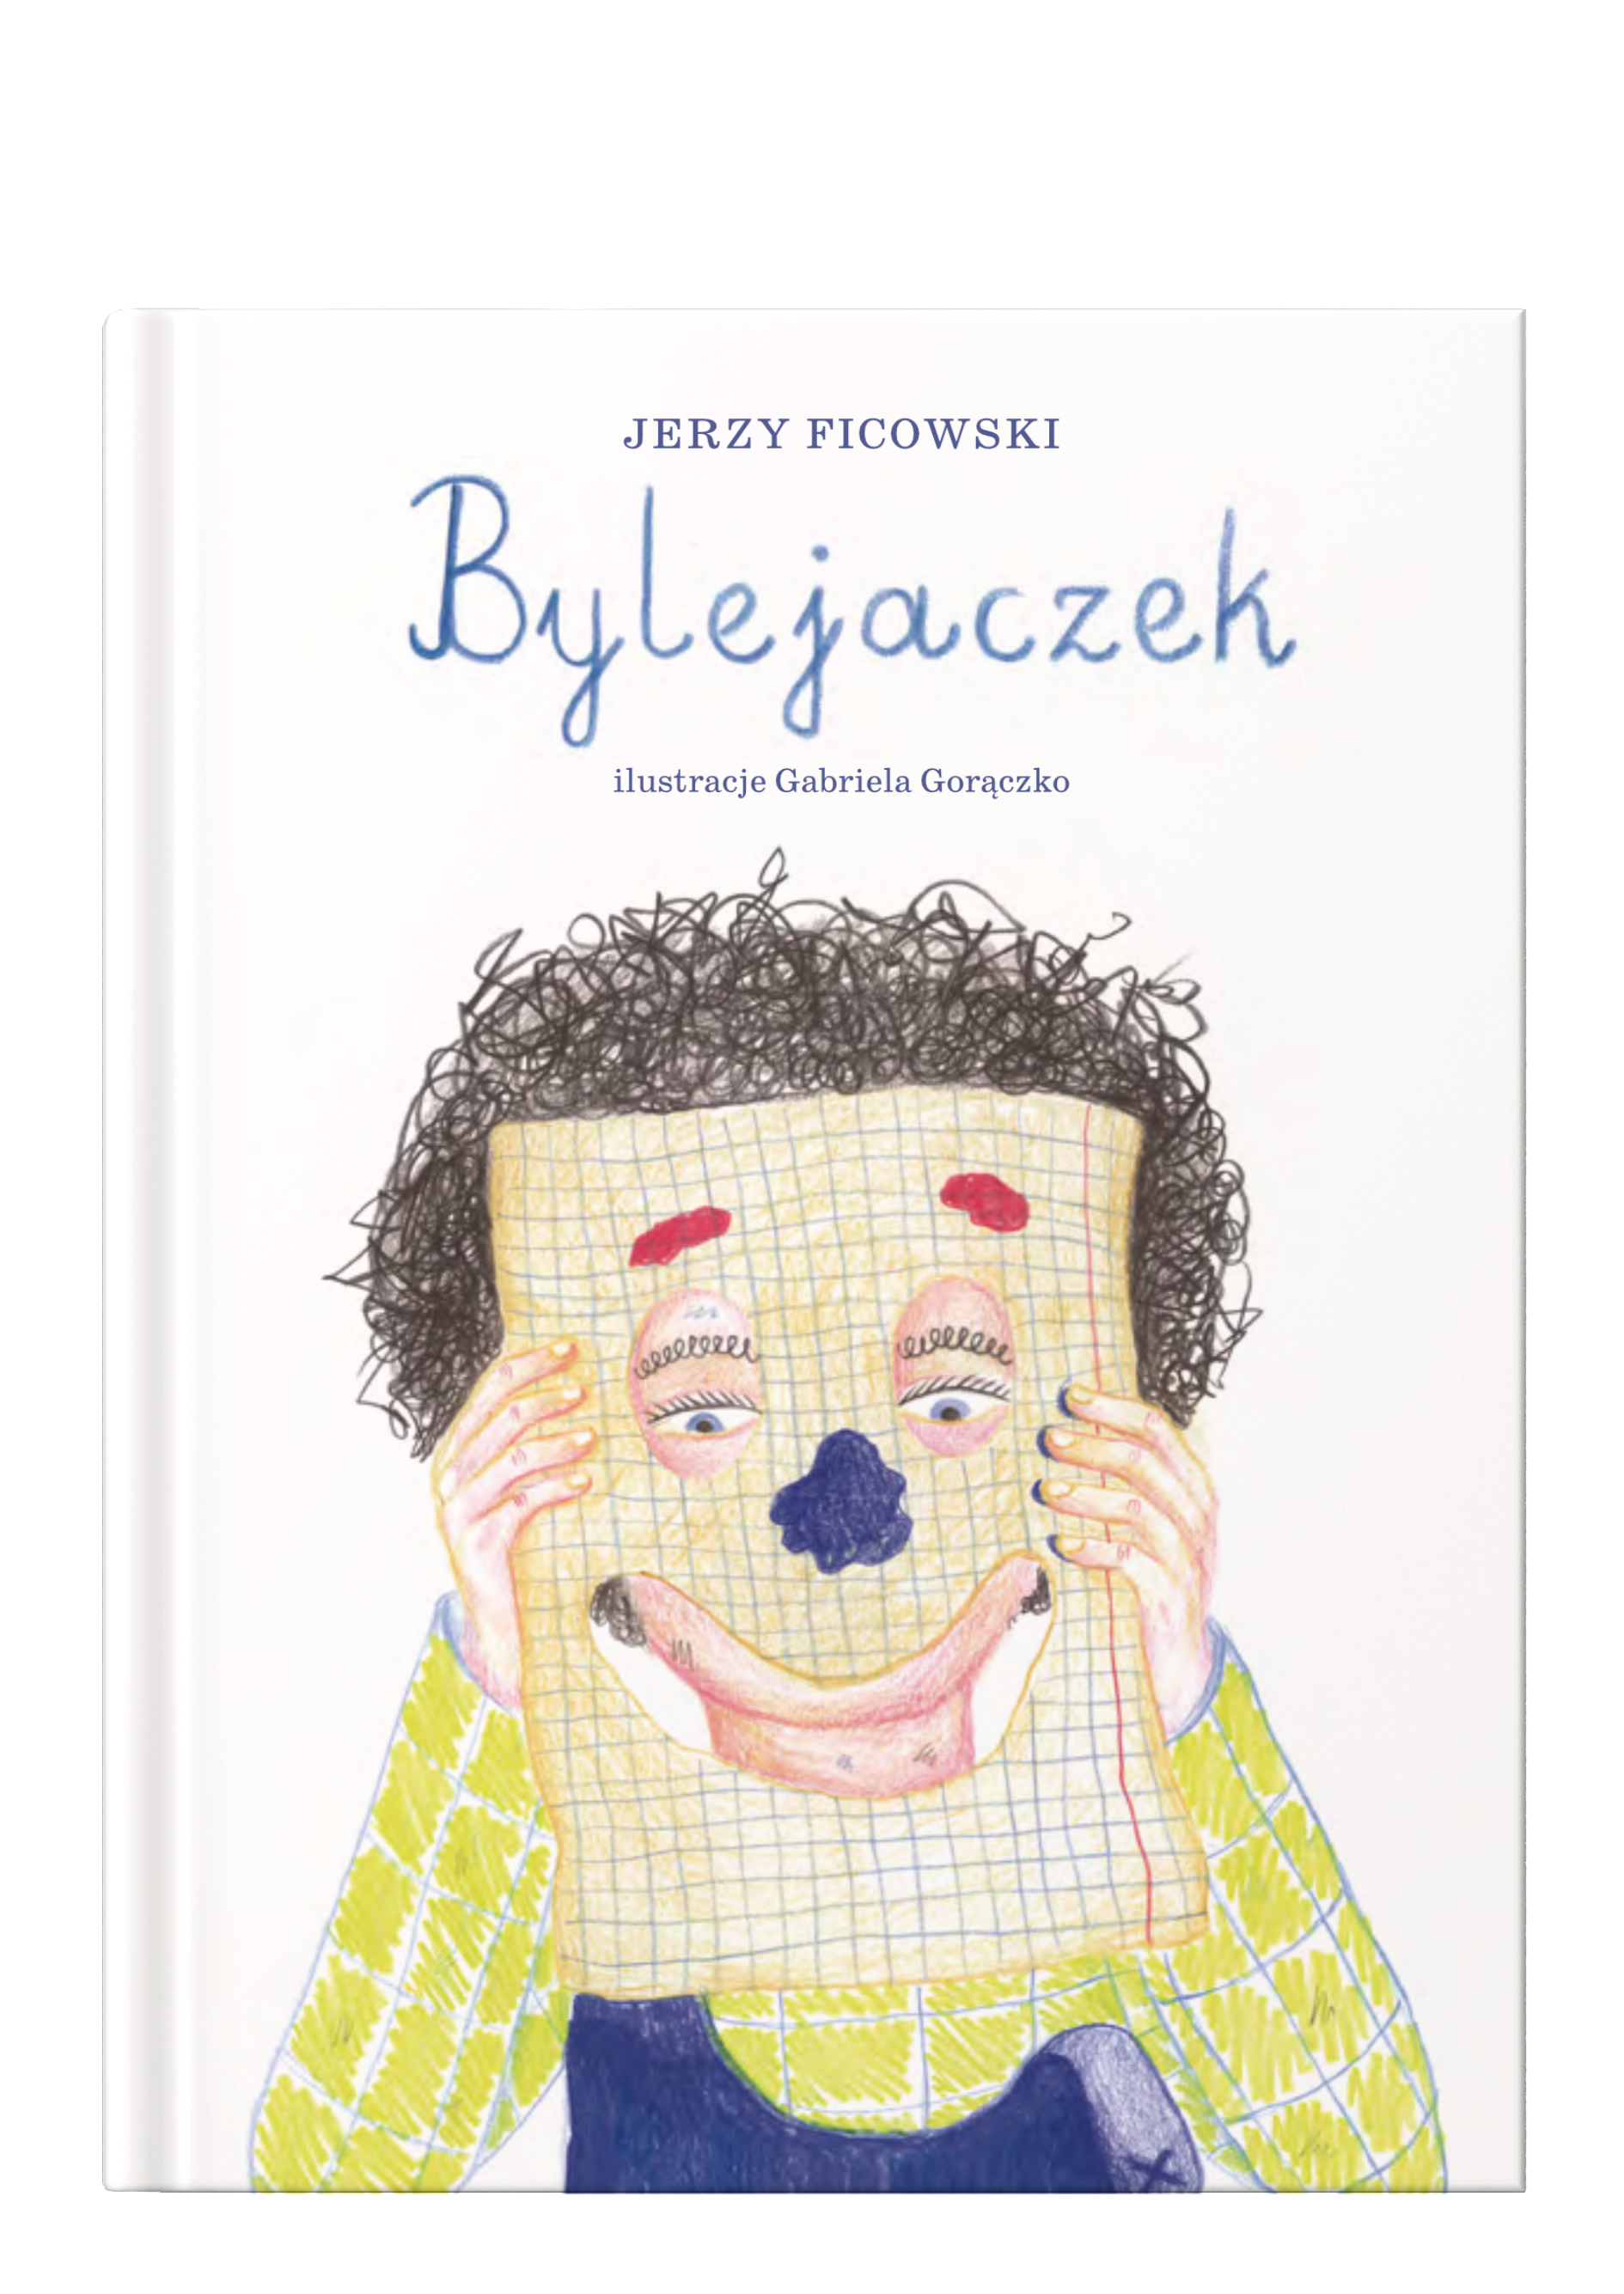 Tytuł: Bylejaczek, autor: Jerzy Ficowski, ilustracje: Gabriela Gorączko, Wydawnictwo Wolno